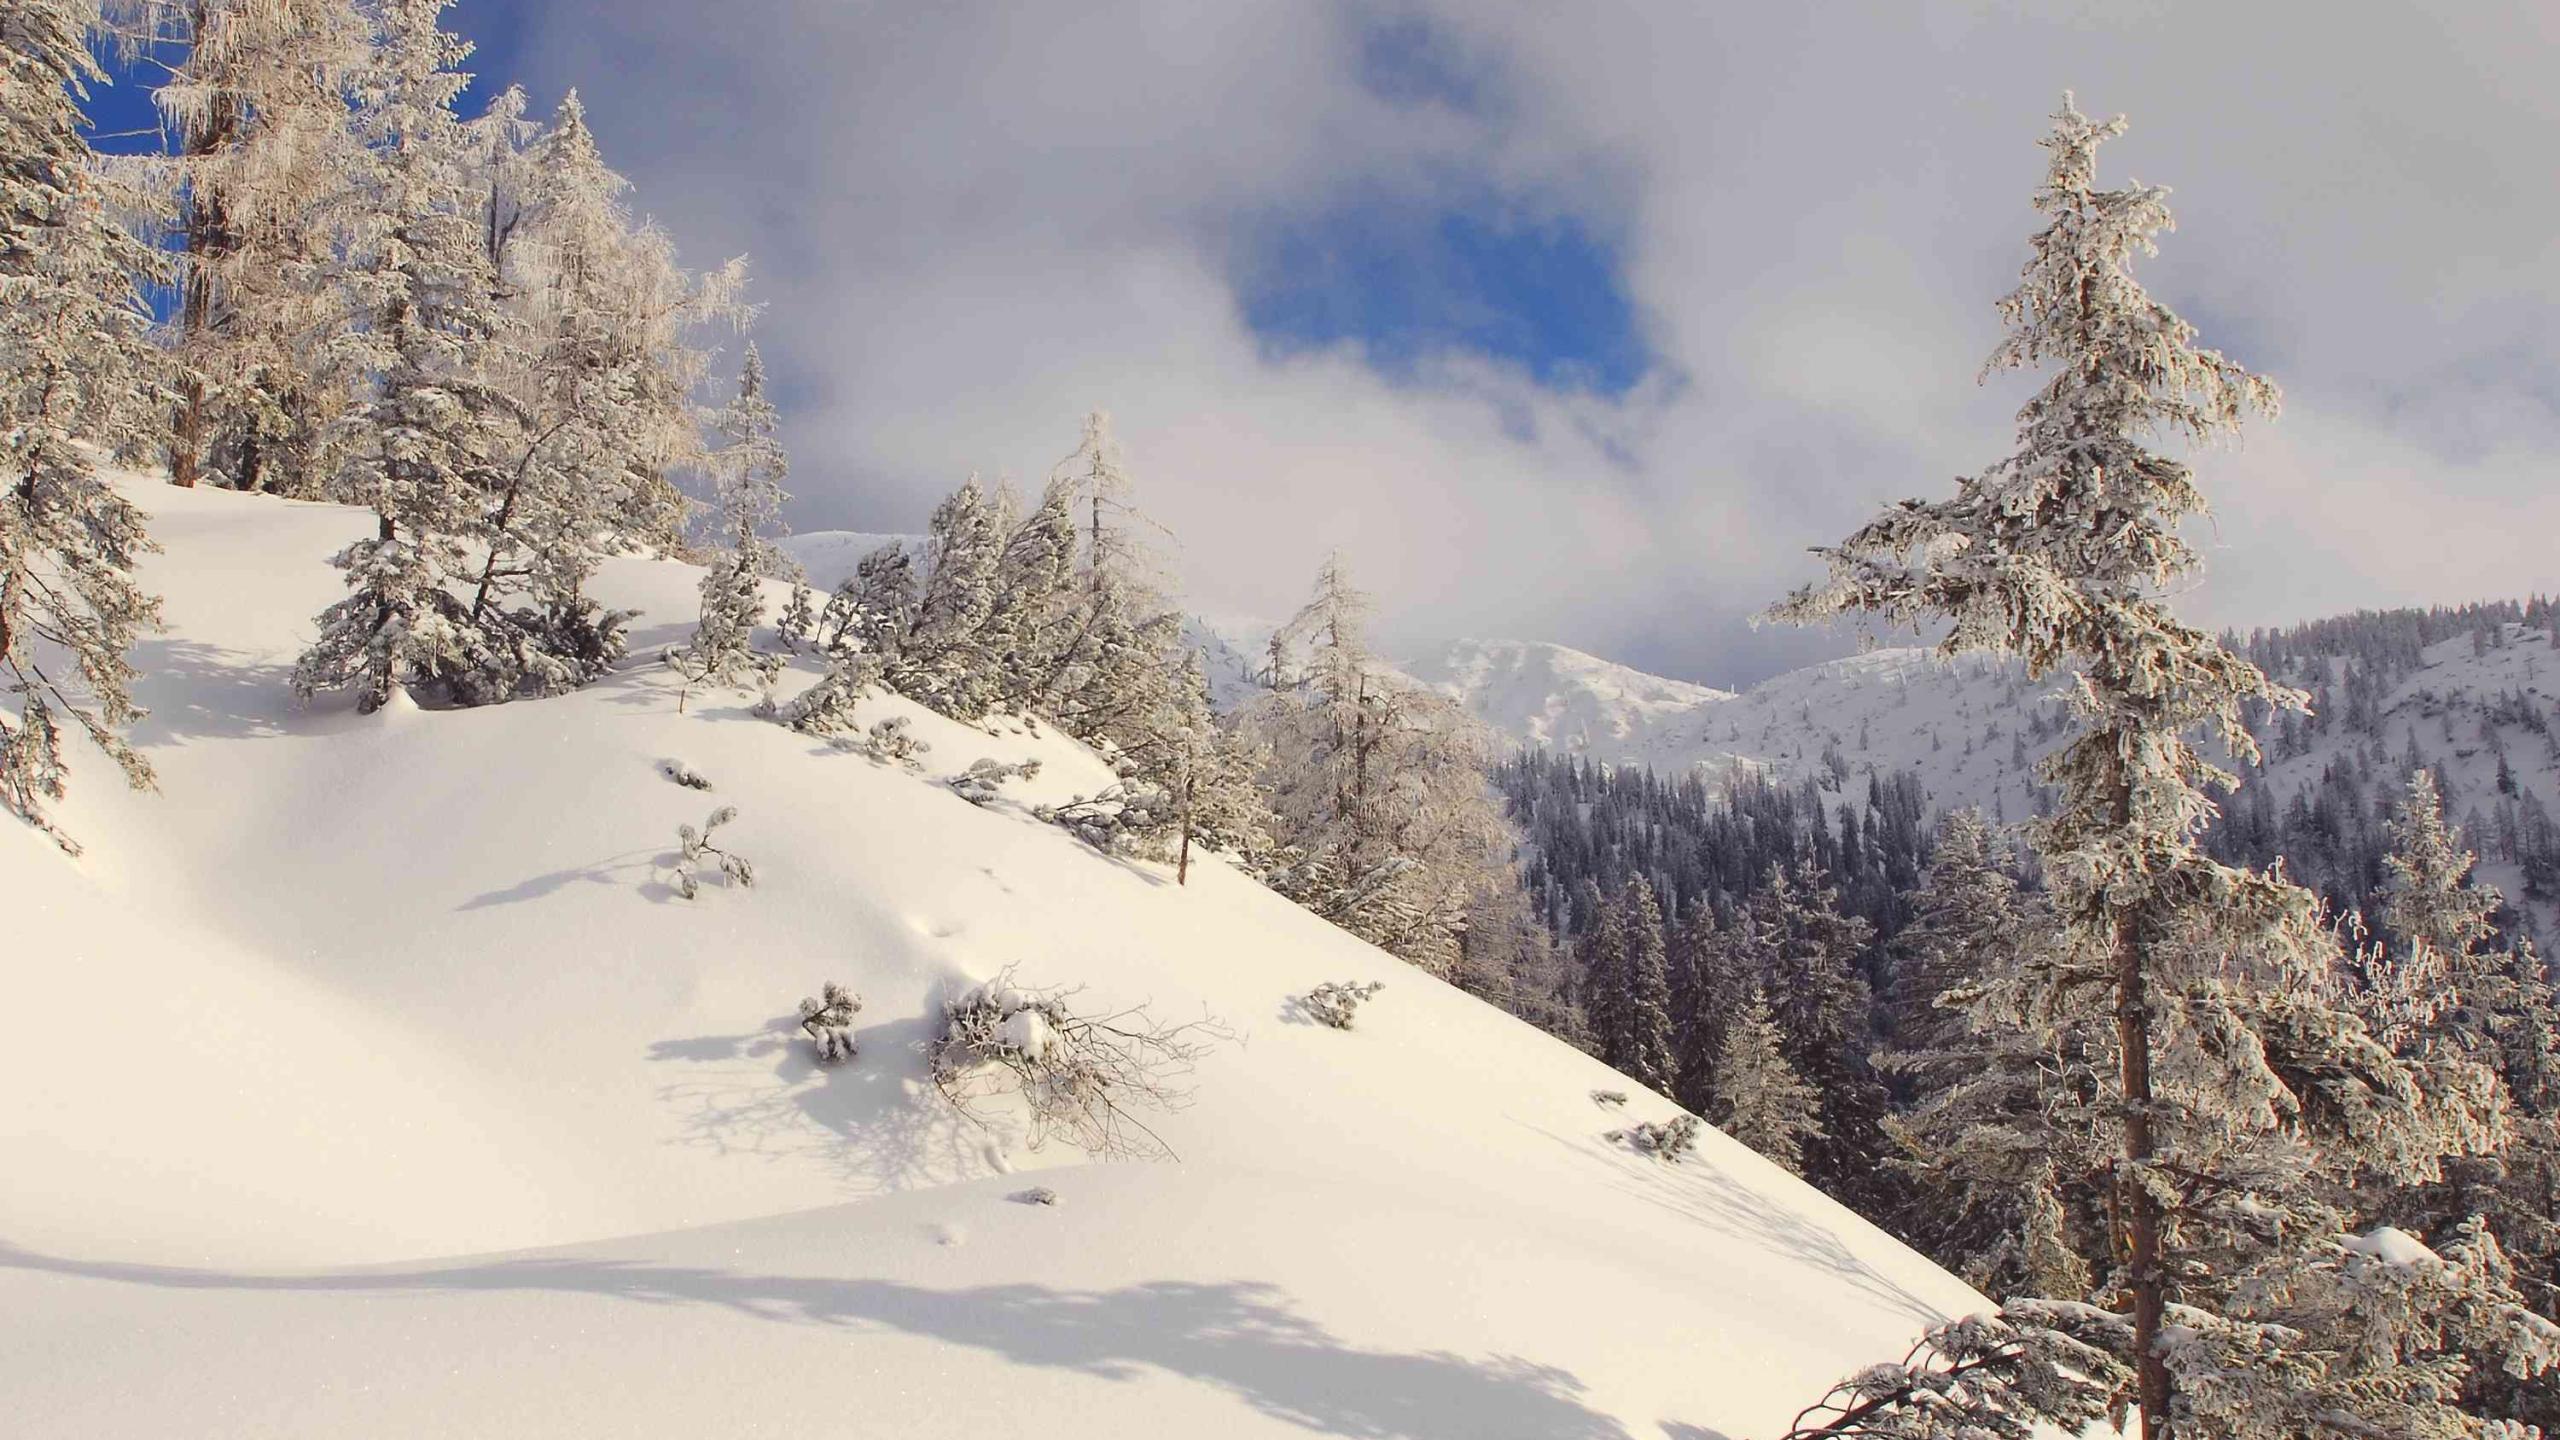 Horské borovice a modříny vyčnívají z husté sněhové pokrývky v pohoří Sengen.